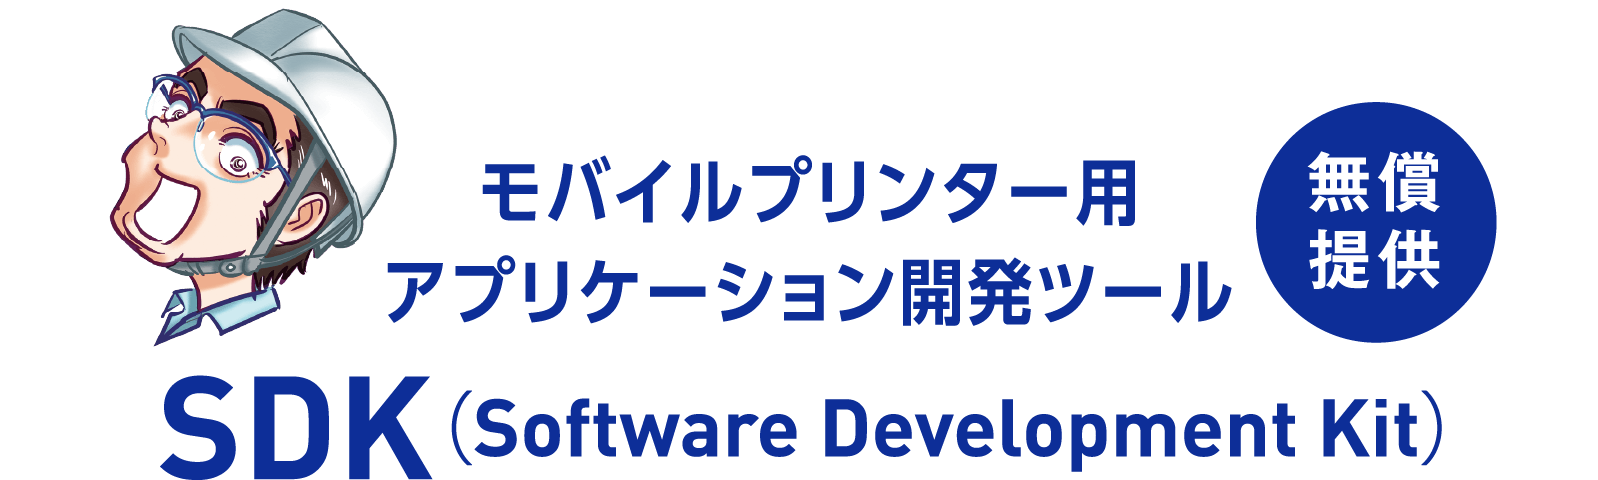 モバイルプリンター用アプリケーション開発ツール SDK（Software Development Kit） 無償提供